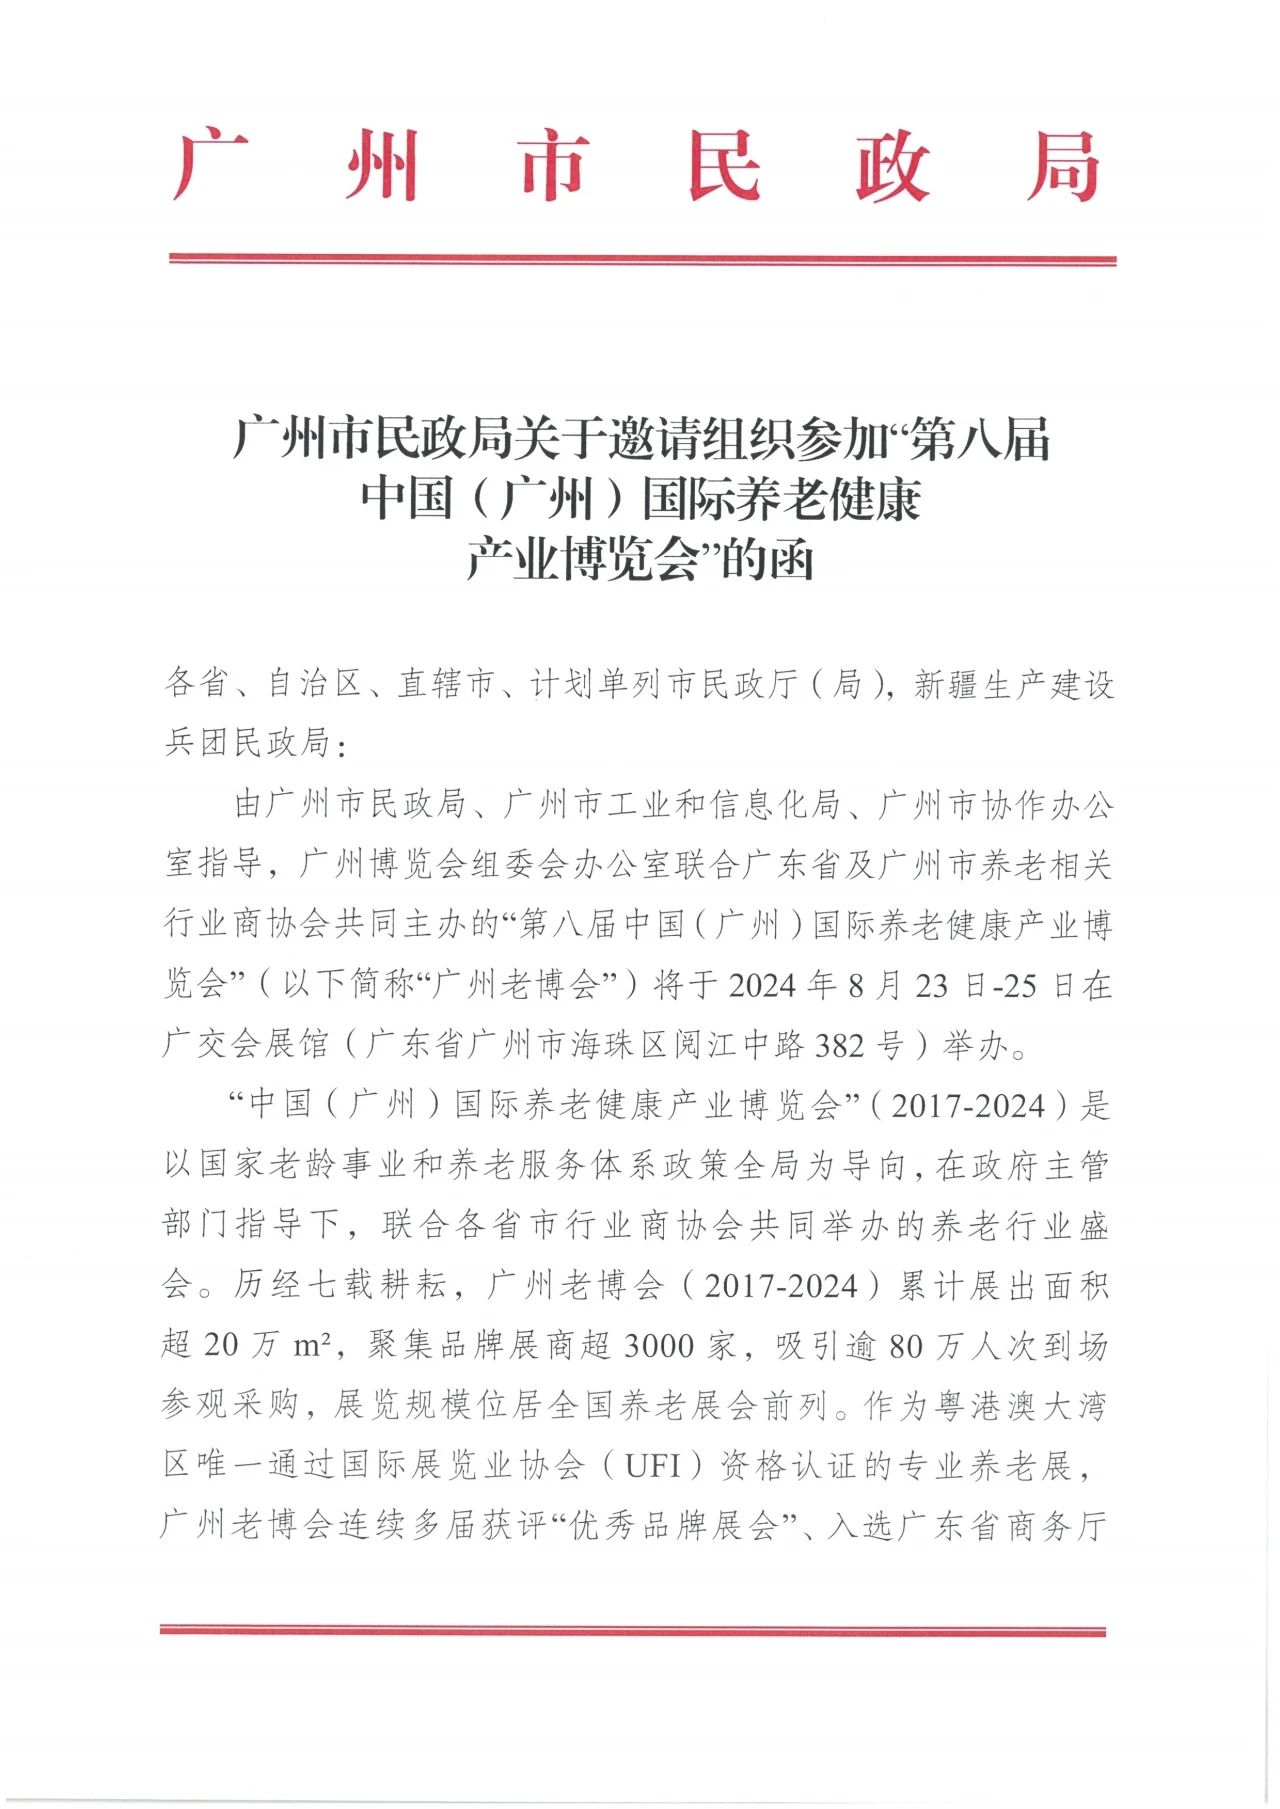 通知  广州市民政局关于邀请组织参加第八届广州老博会的函1.jpg